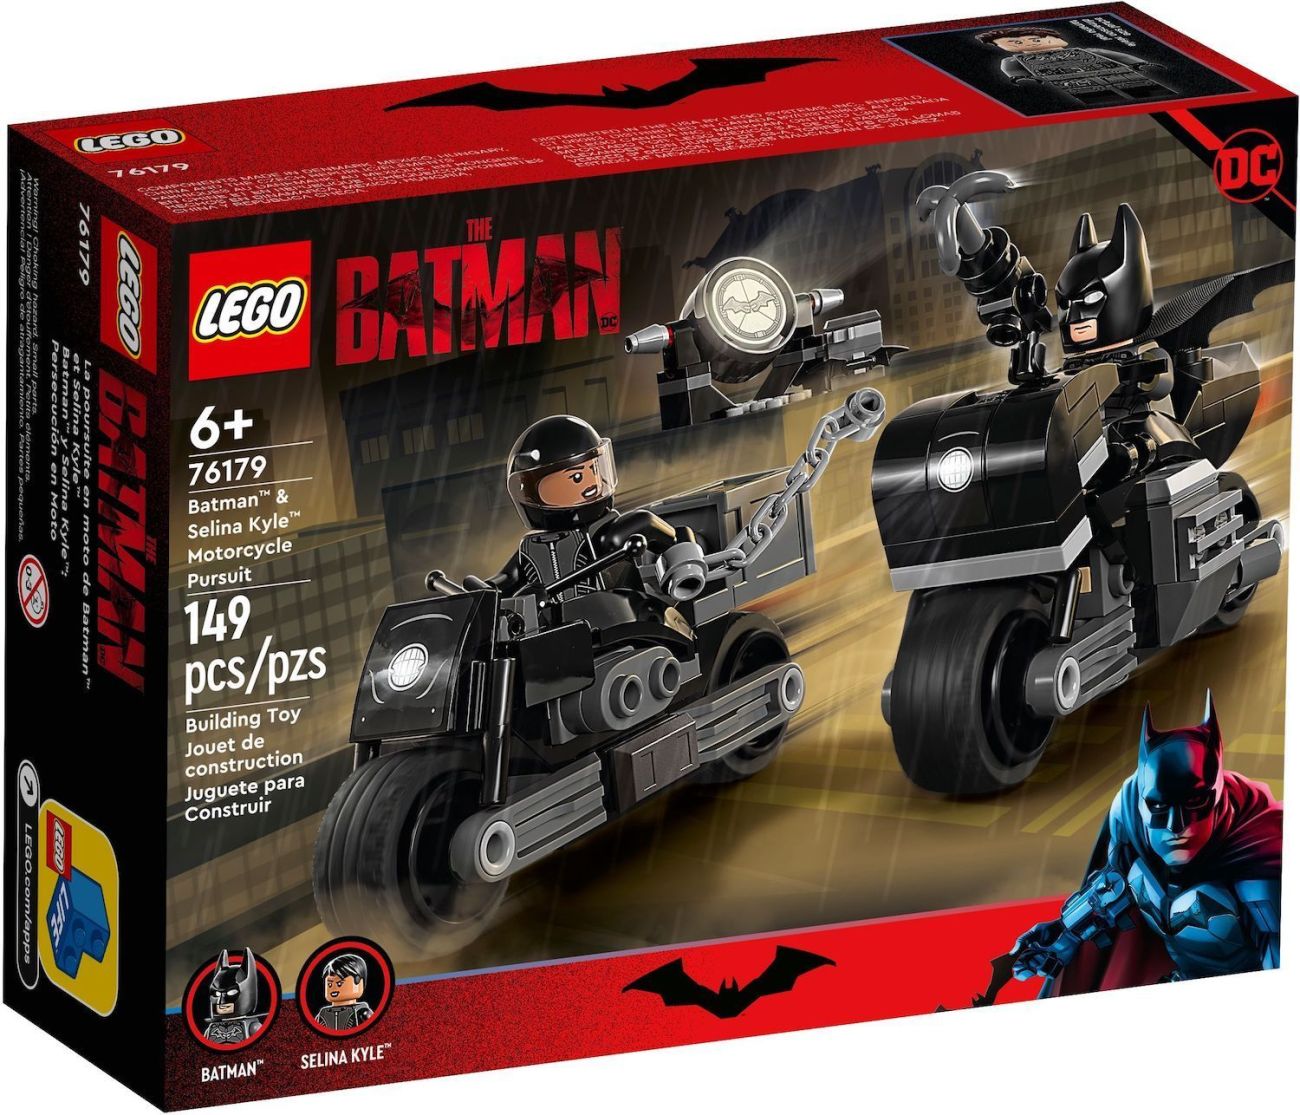 LEGO The Batman: Offizielle Bilder und alle Details zu drei neuen Sets